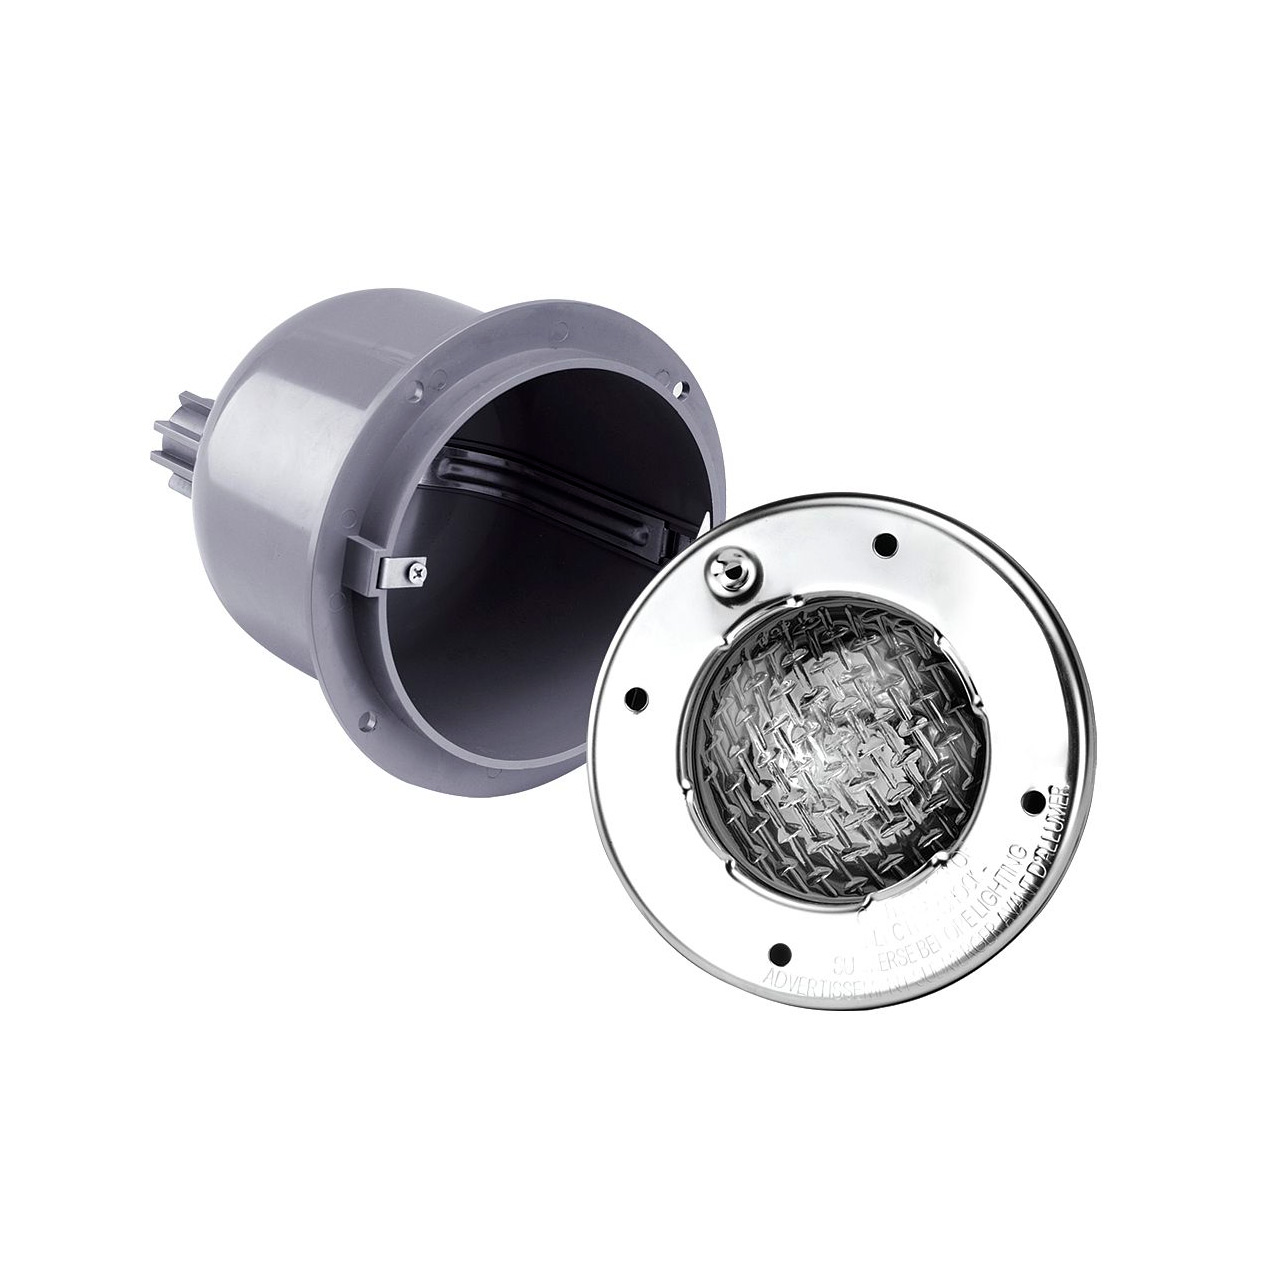 Светильник Emaux LEDS-100PN н/ж сталь 2 Вт (плитка)